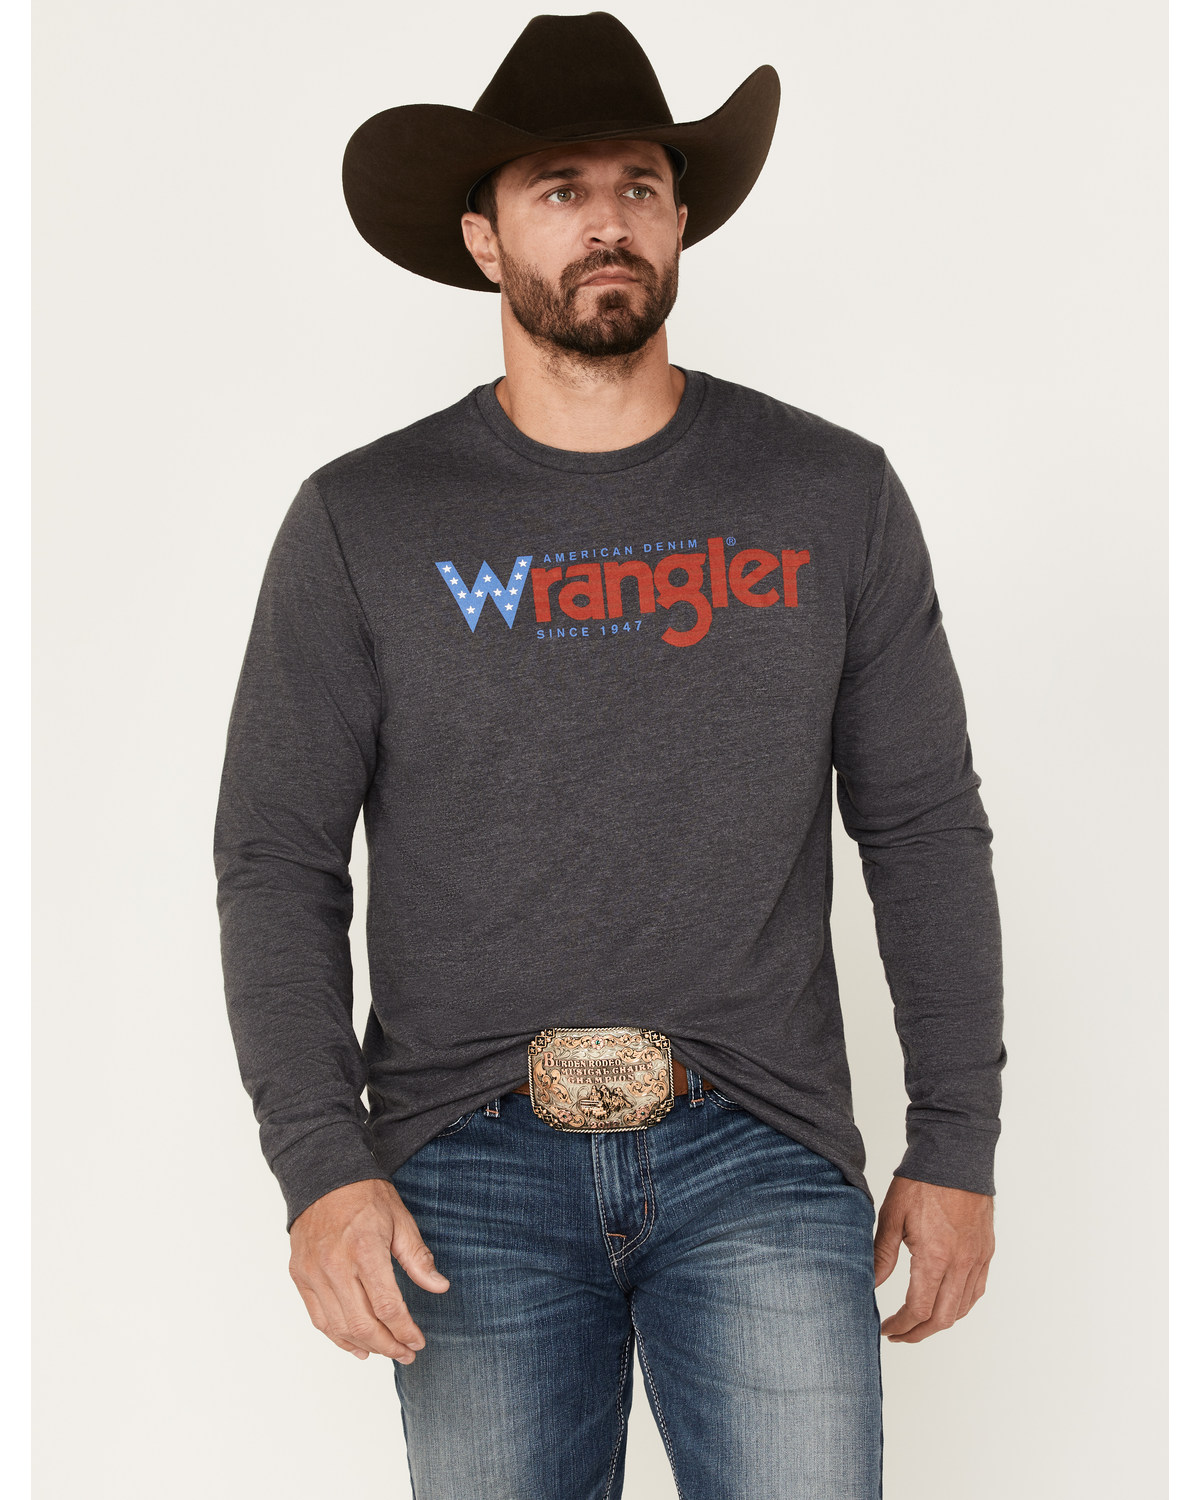 Wrangler Men's Americana Logo Long Sleeve T-Shirt